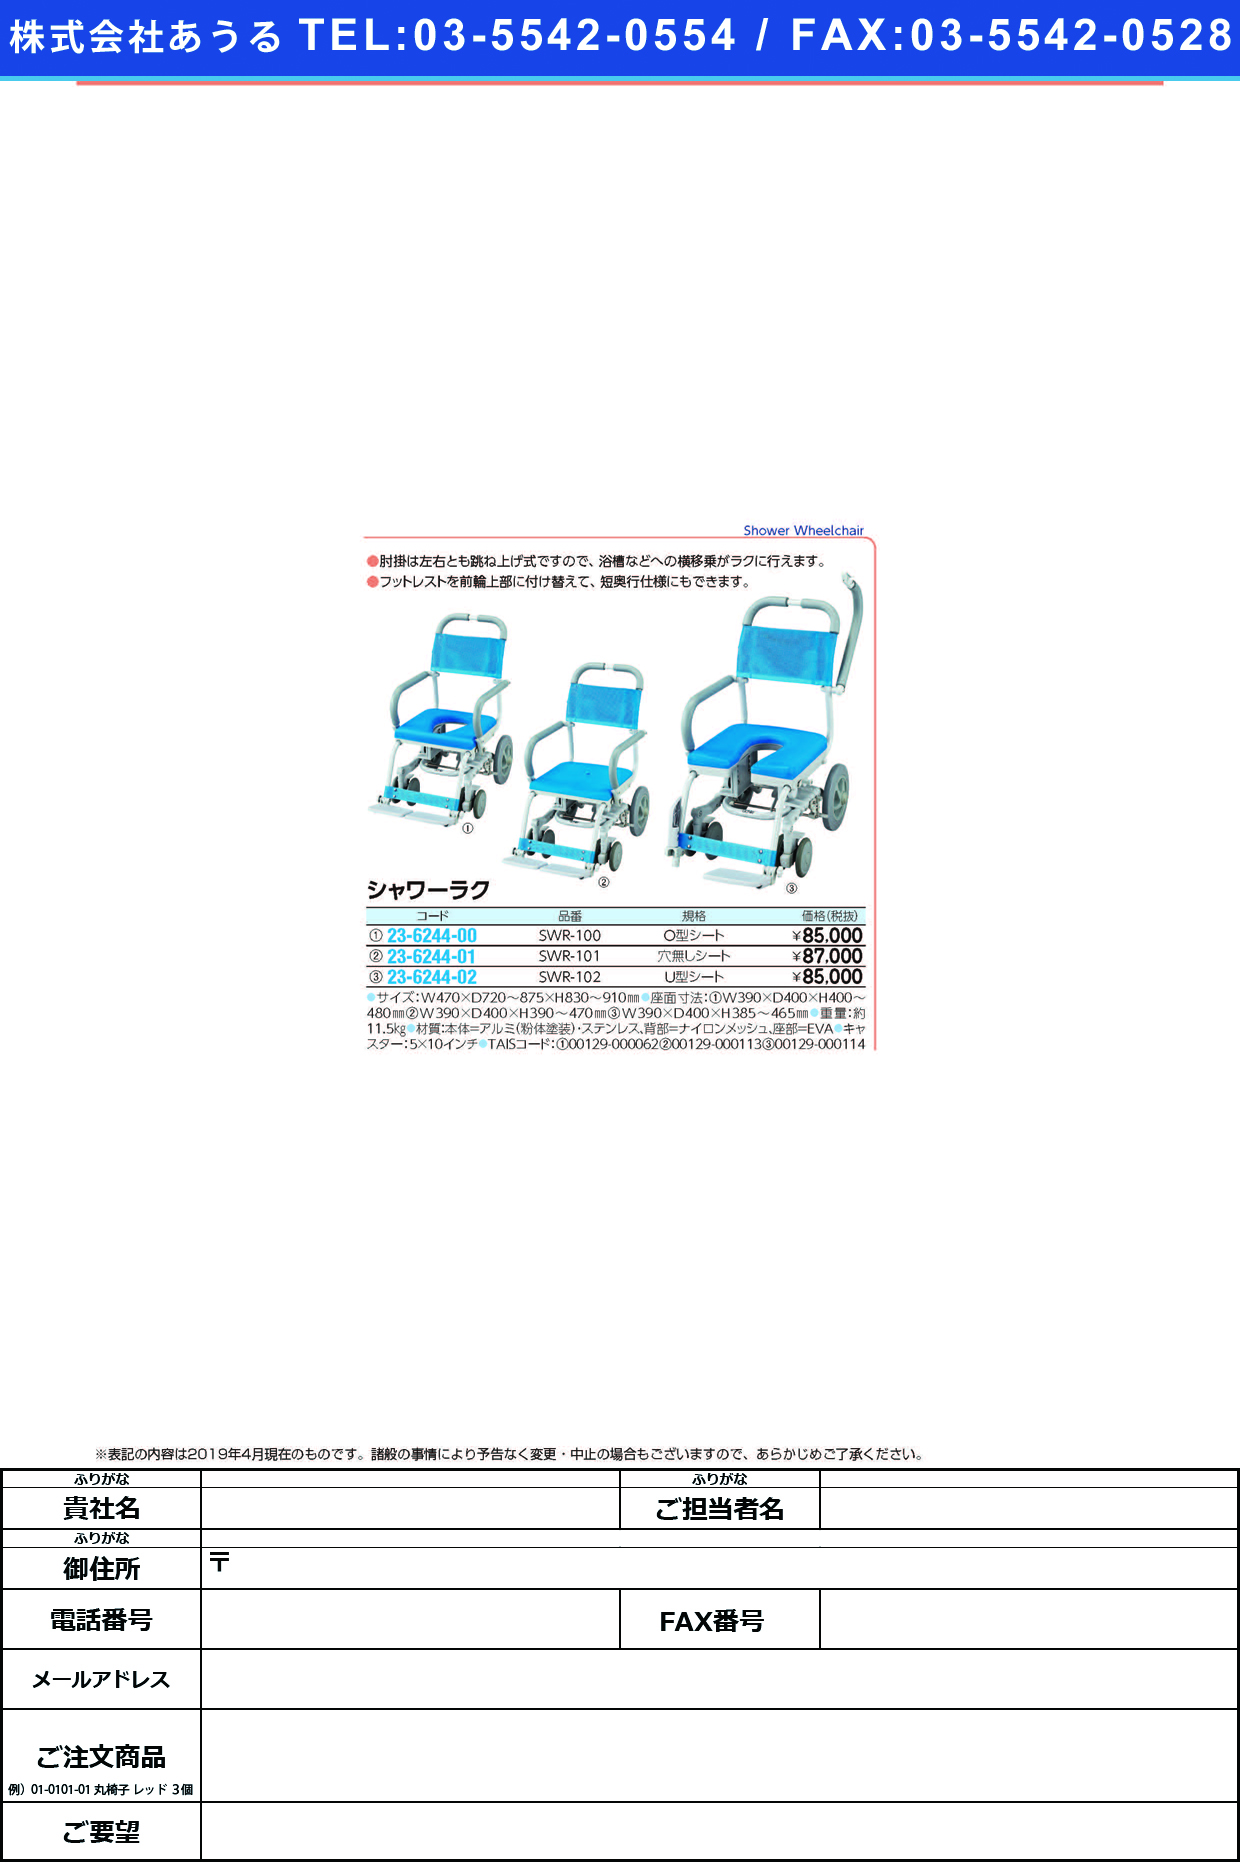 (23-6244-00)シャワーラク（Ｏ型シート） SWR-100 ｼｬﾜｰﾗｸ(Oｶﾞﾀｼｰﾄ)【1台単位】【2019年カタログ商品】